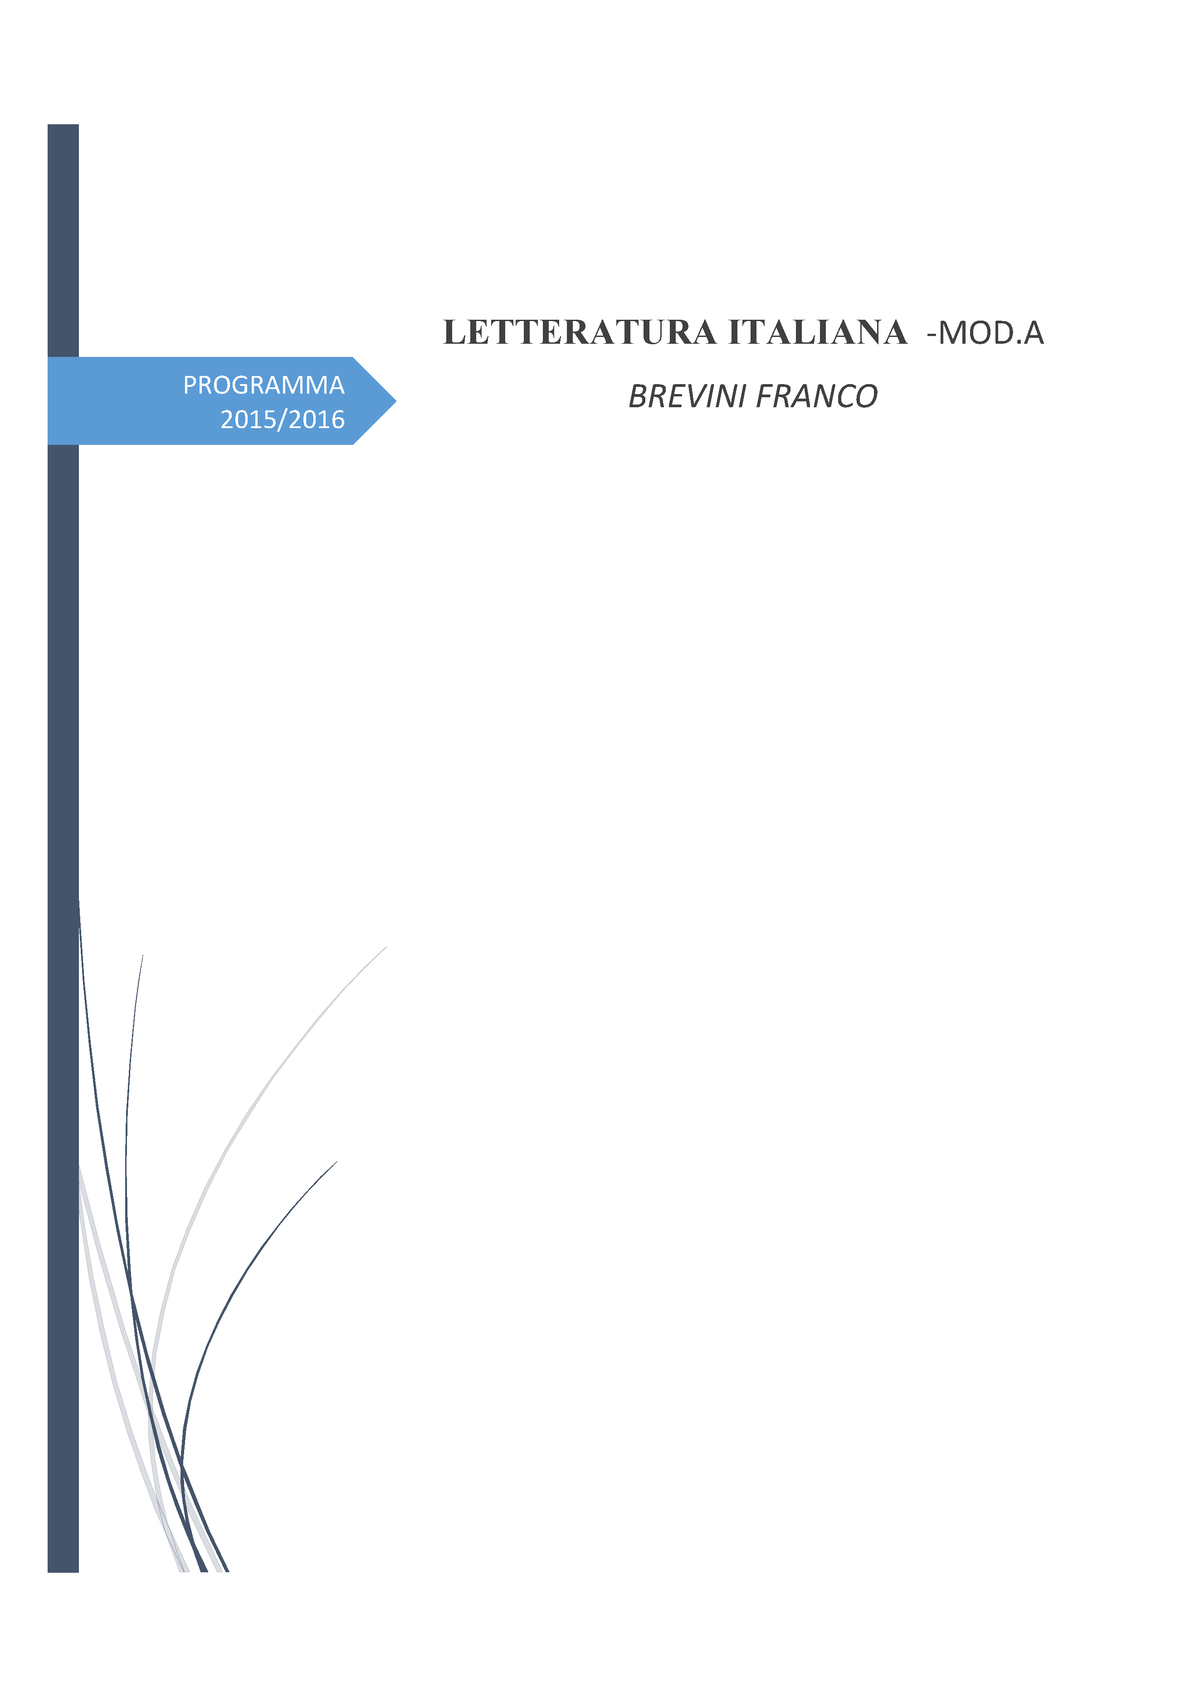 Poesie Letteratura Mod A Letteratura Italiana 6 25096